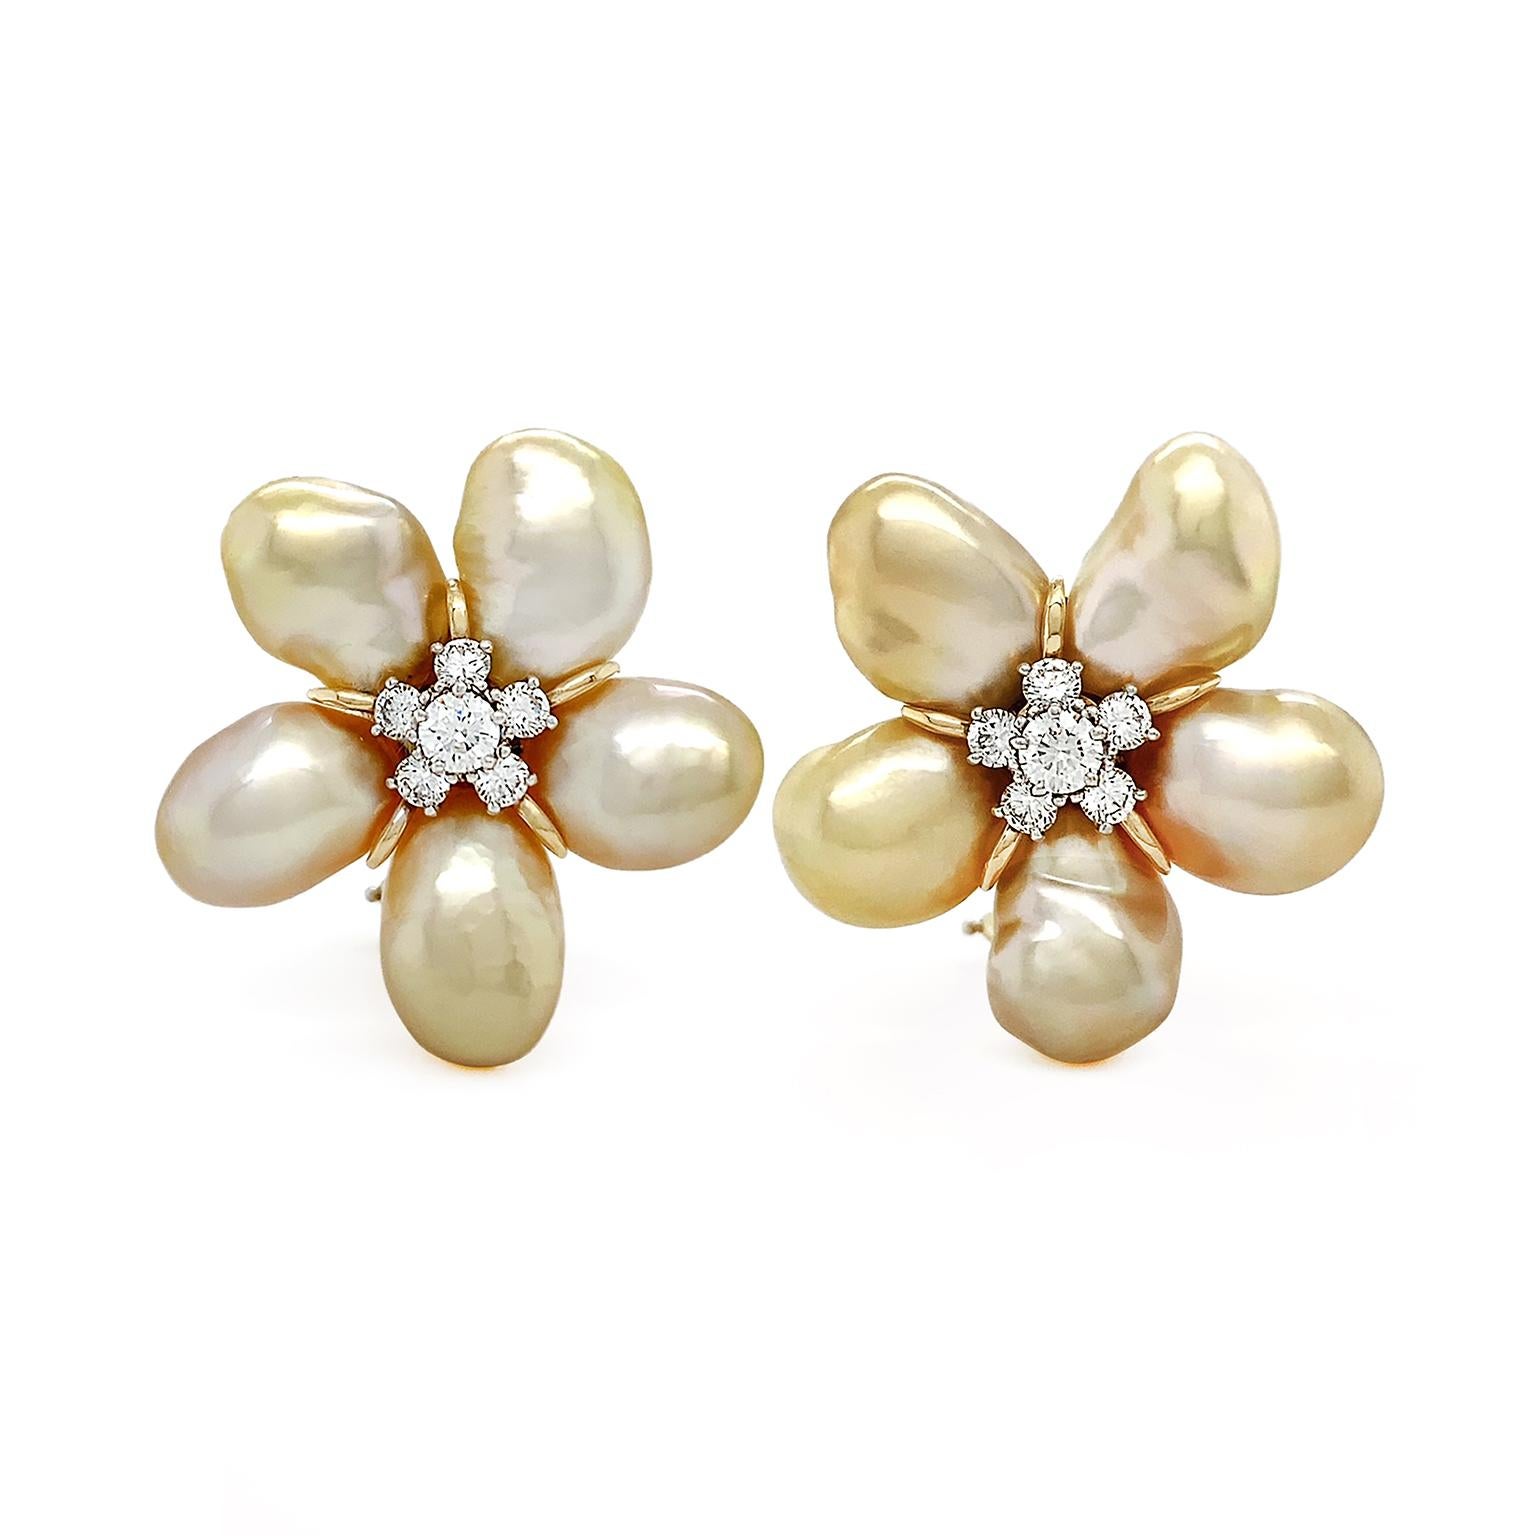 Der warme Glanz von goldenen Keshi-Perlen verbindet sich bei diesen Ohrringen mit dem Glanz von Diamanten. Fünf barocke Keshi-Perlen aus Gold sind in einem kreisförmigen Muster angeordnet, das sich nach außen erstreckt. Keshi-Perlen sind dafür